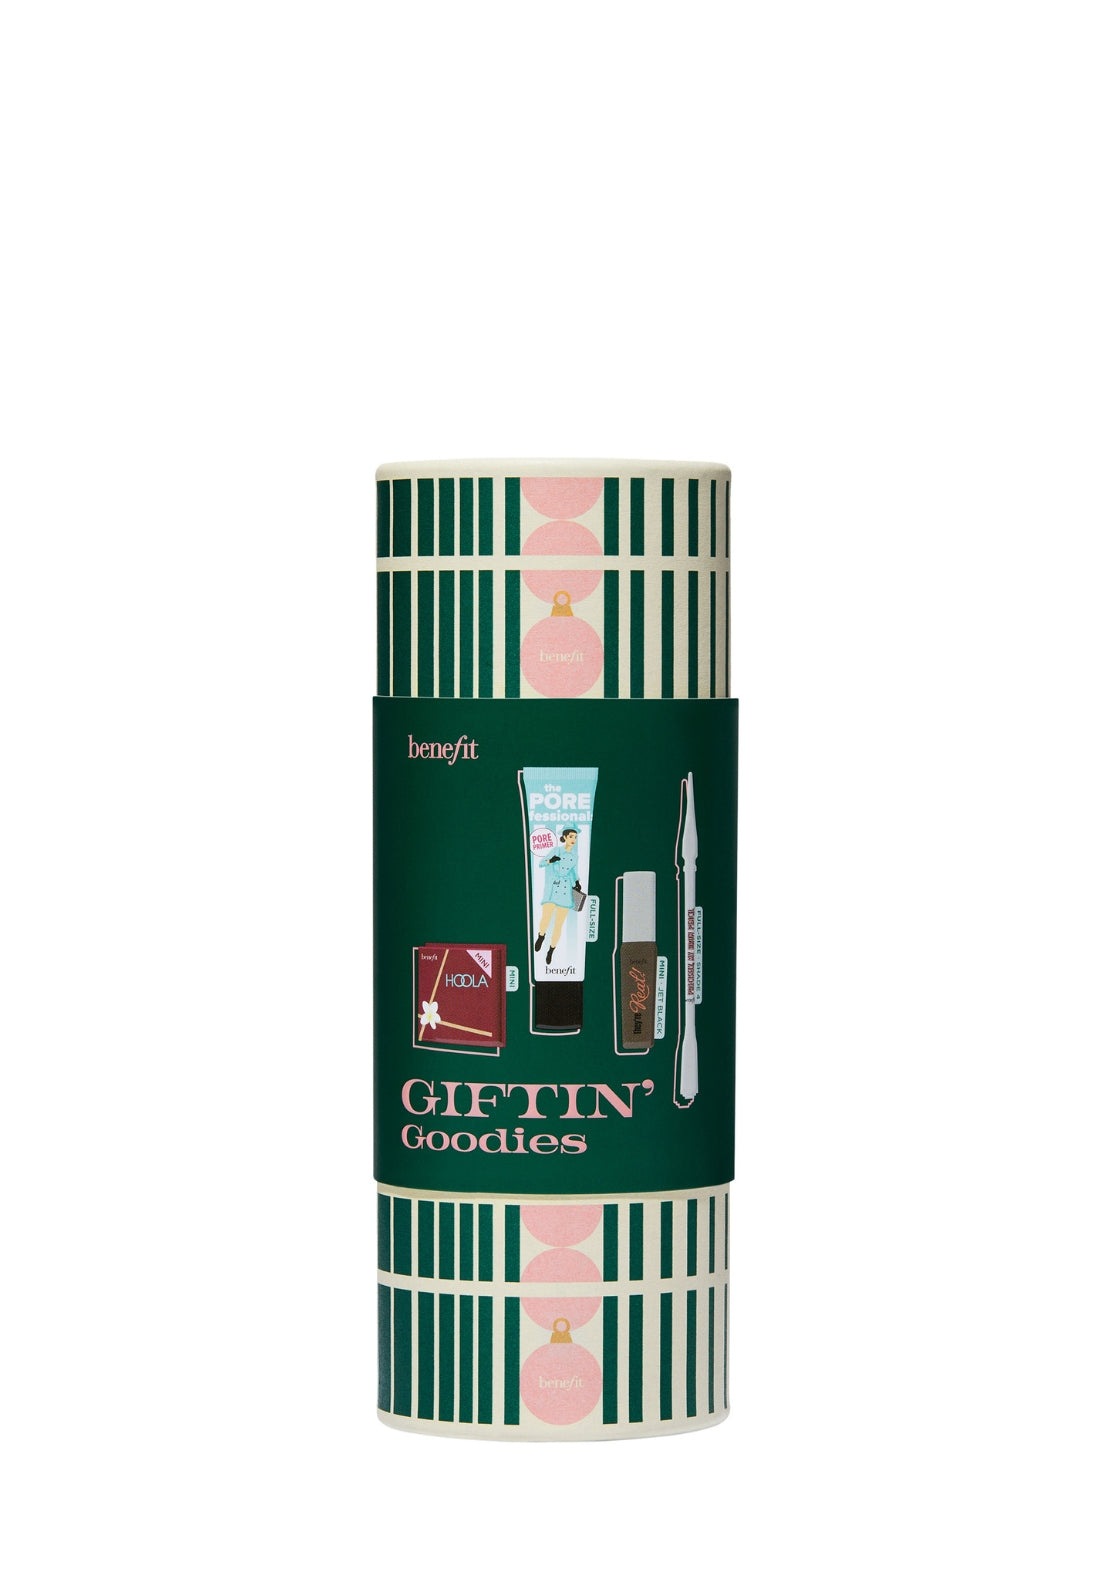 Giftin’ Goodies value set